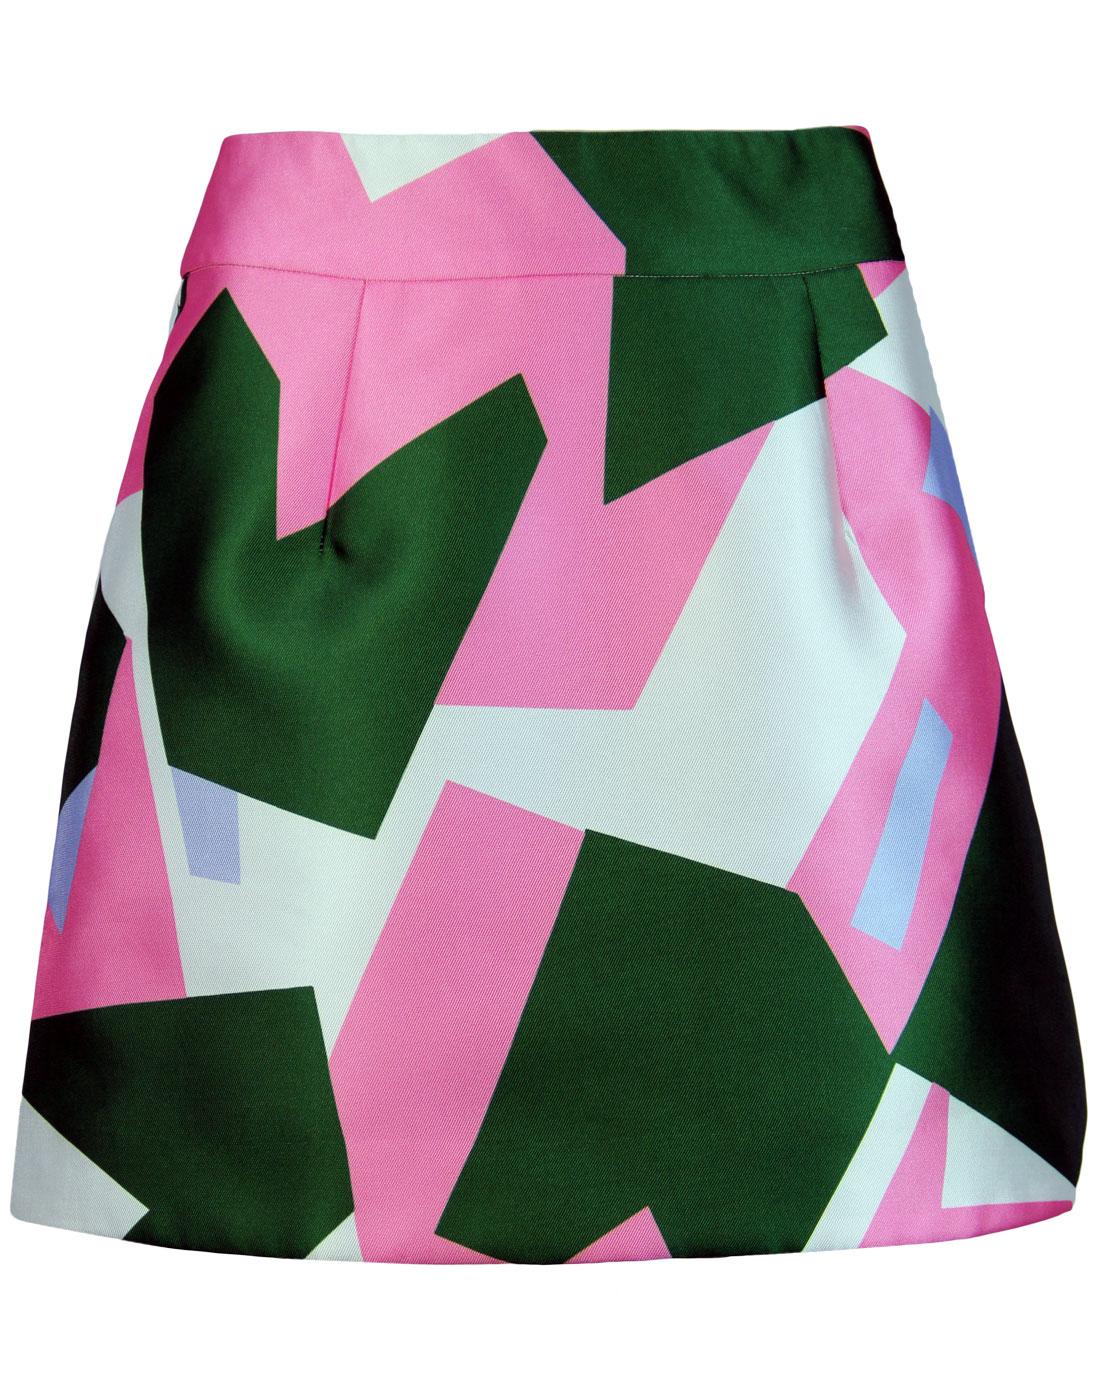 TRAFFIC PEOPLE A Mini Retro Geo Print Mini Skirt in Green/Pink